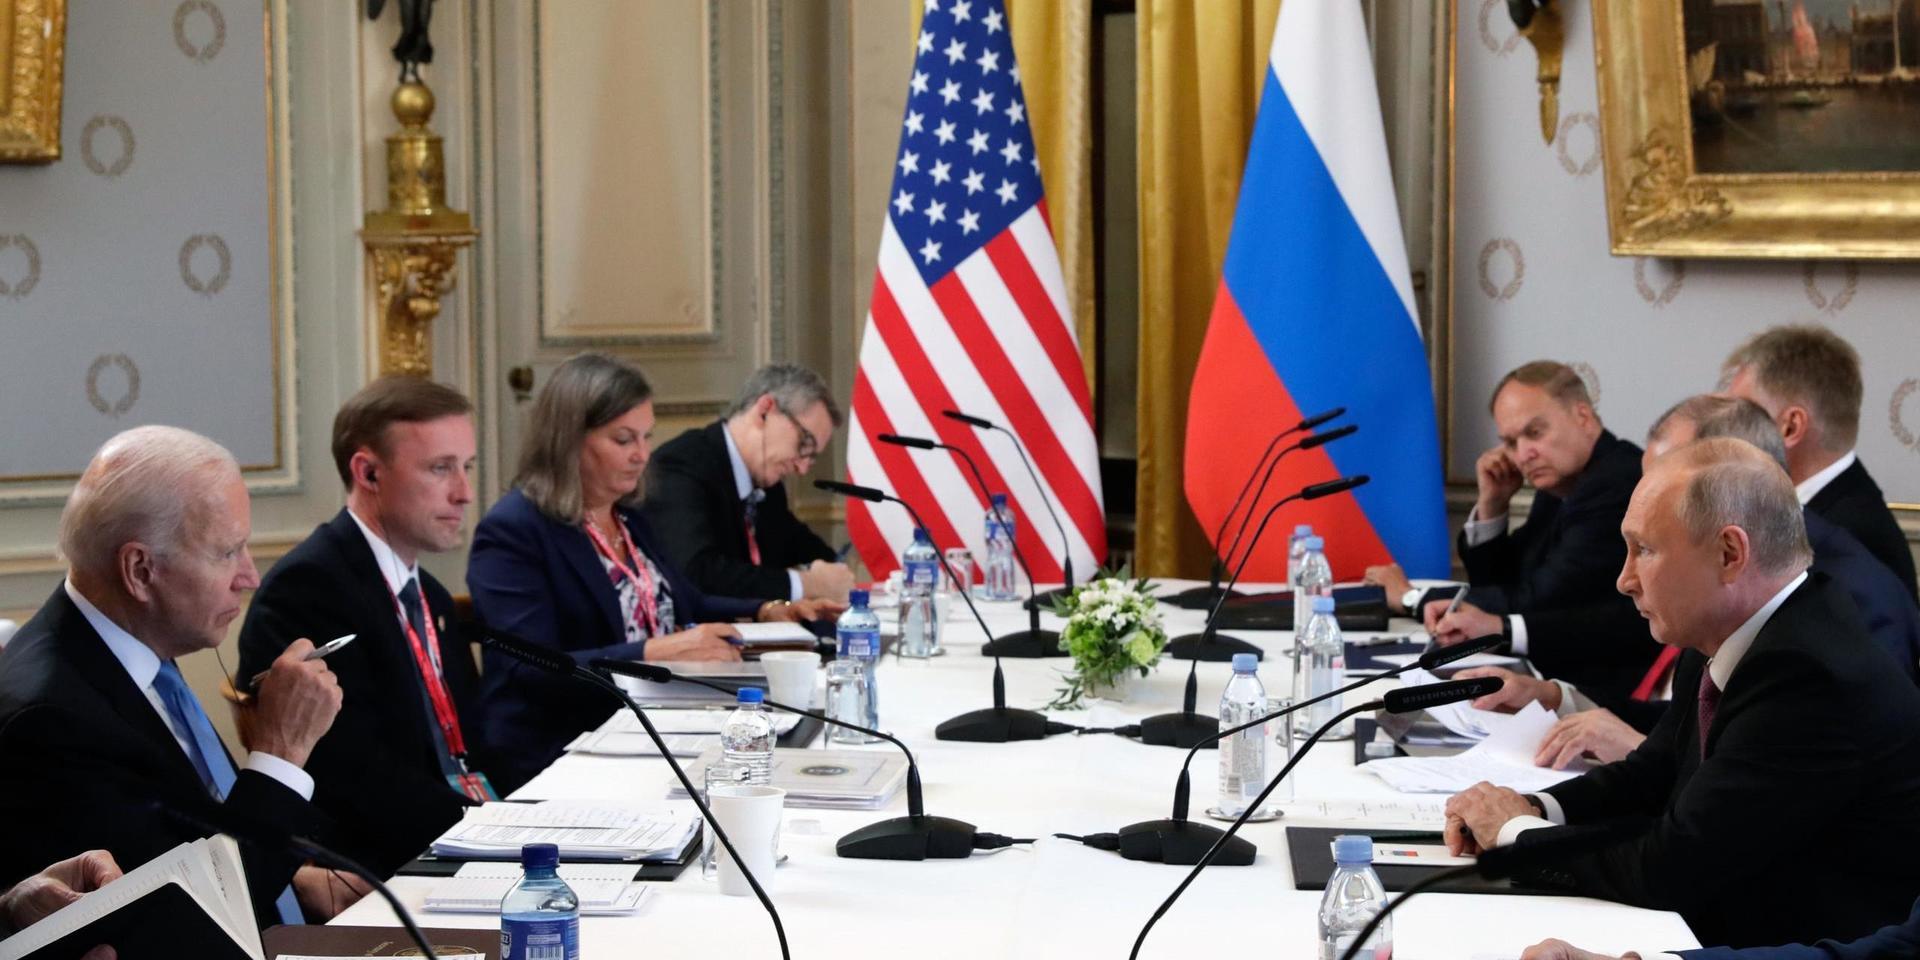 USA:s president Joe Biden med delegation på vänstersidan av bordet, ryske presidenten Vladimir Putin med medhjälpare till höger.